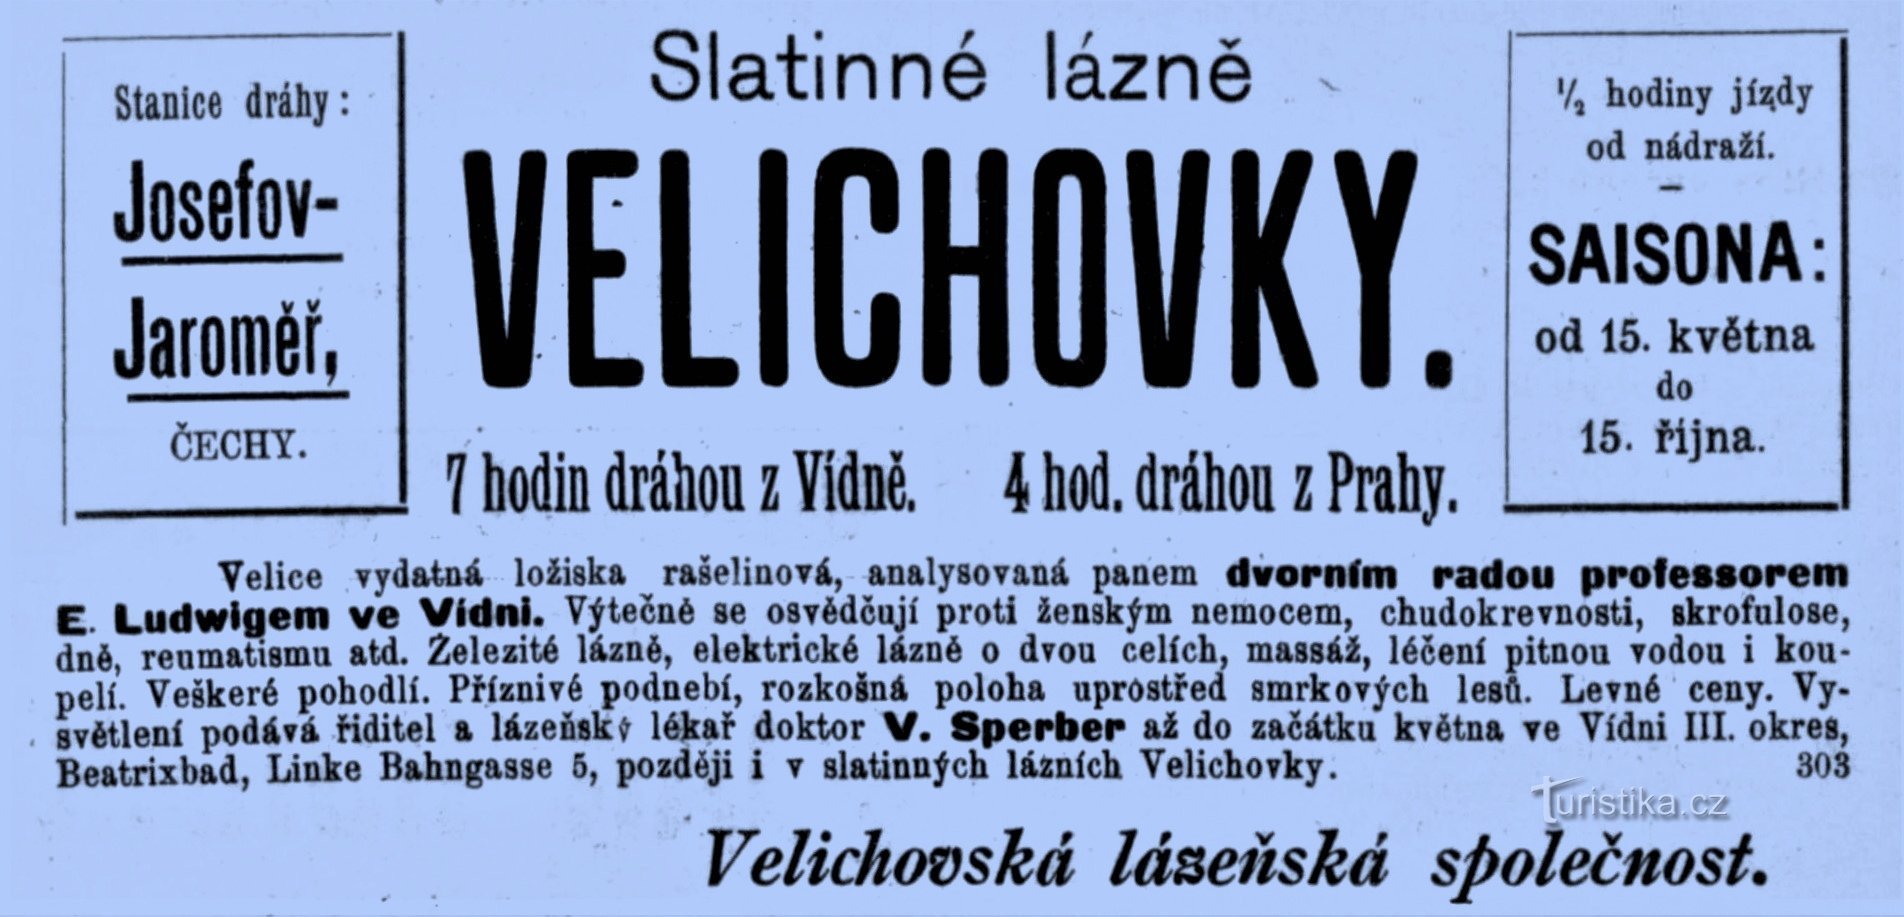 Pubblicità delle terme di Velichovky del 1898